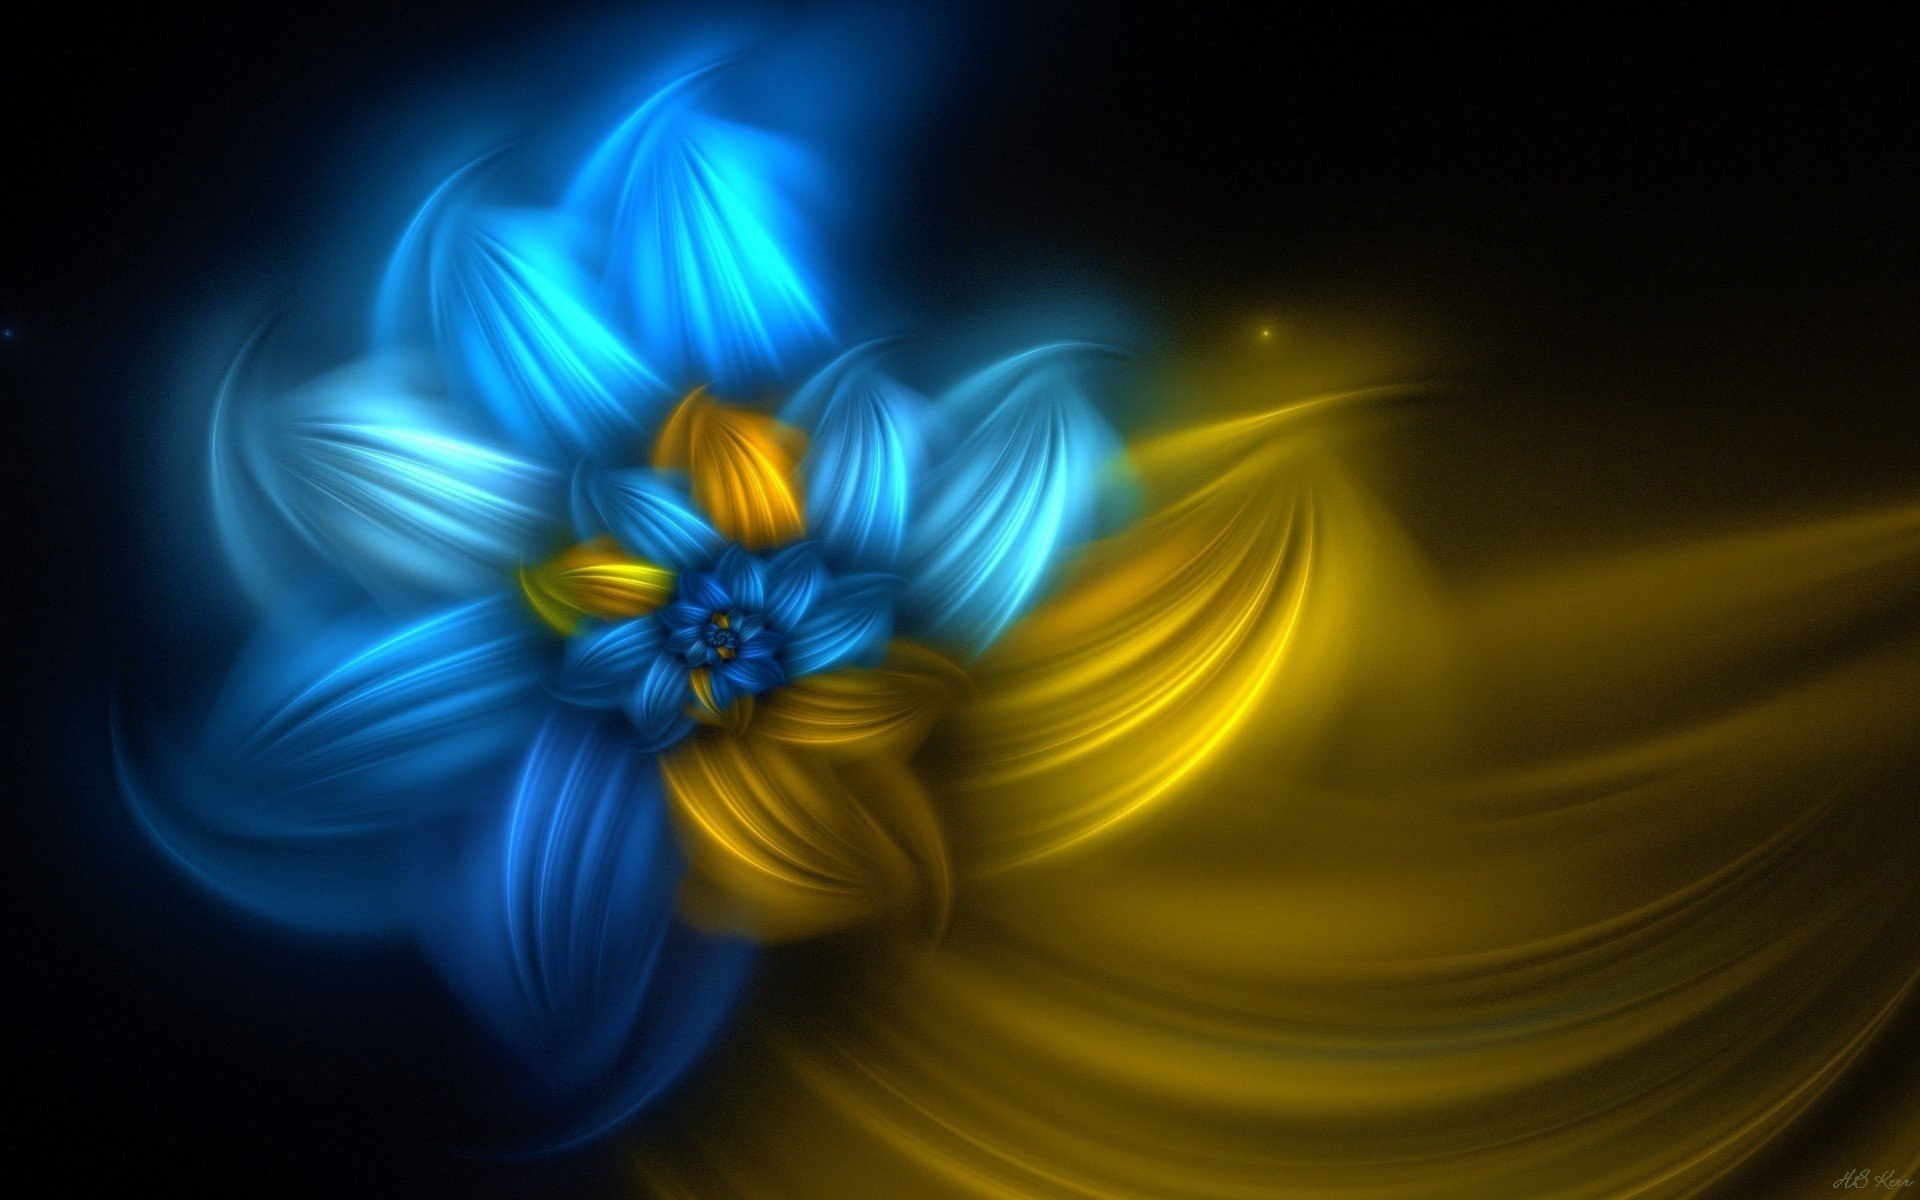 Космический цветок жёлто-голубога цвета